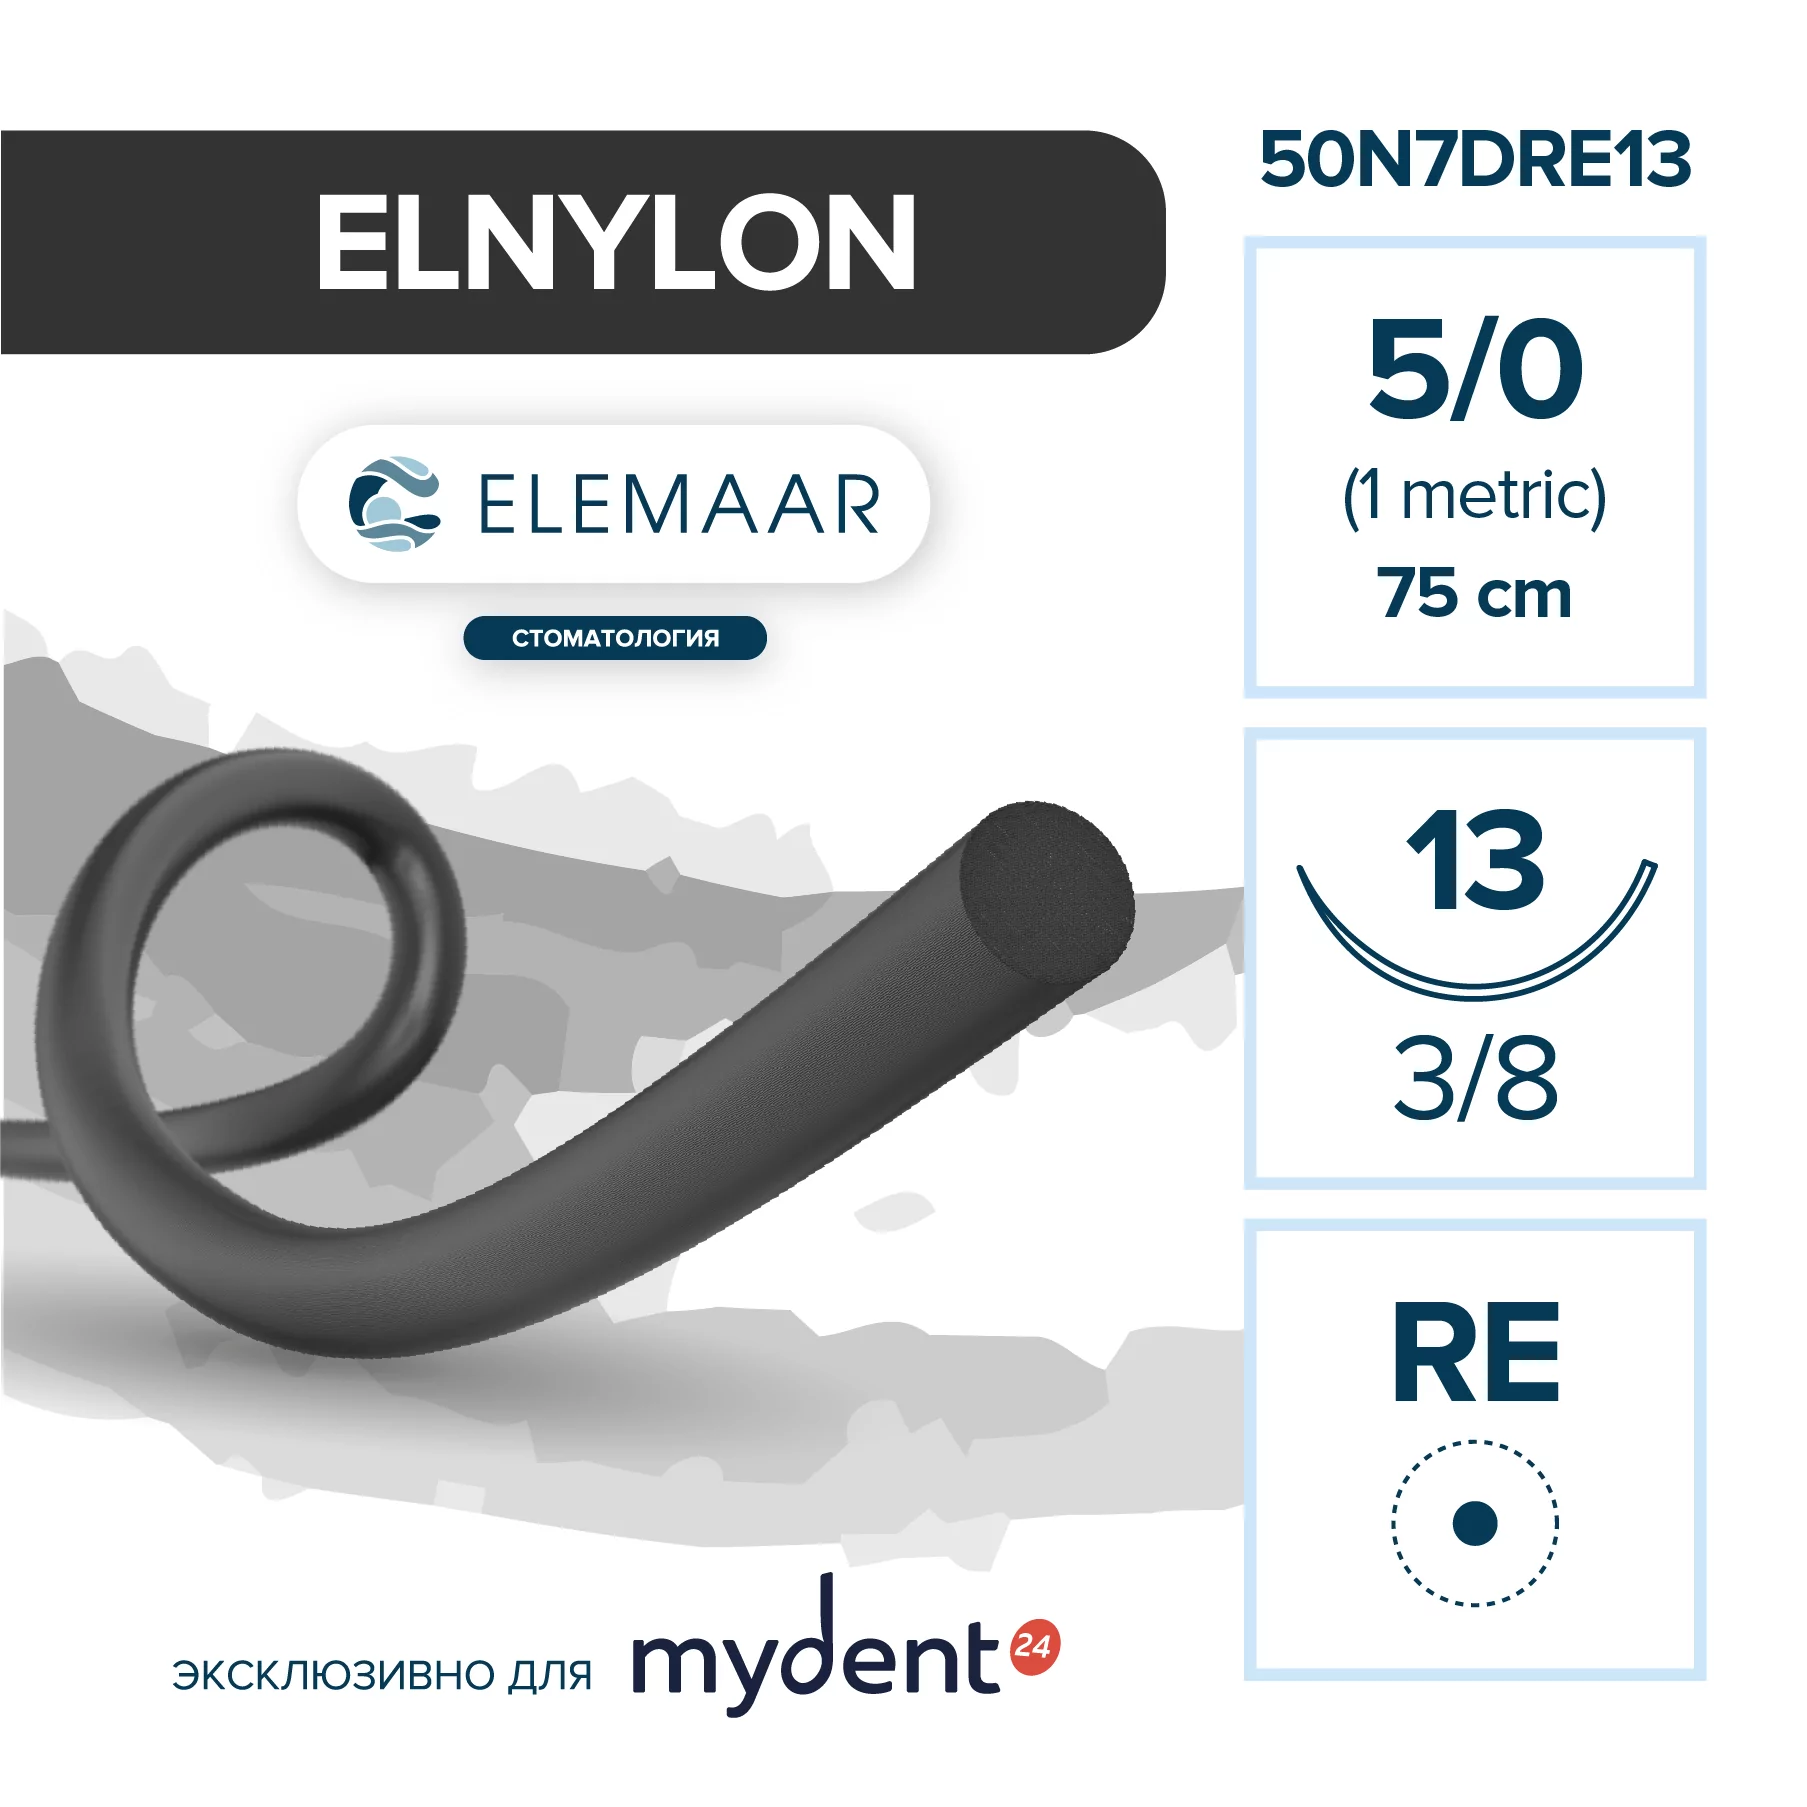 Шовный материал ELNYLON 5/0 (12 шт, 75 см, 3/8, 13 мм, колющая игла с квадратным телом)